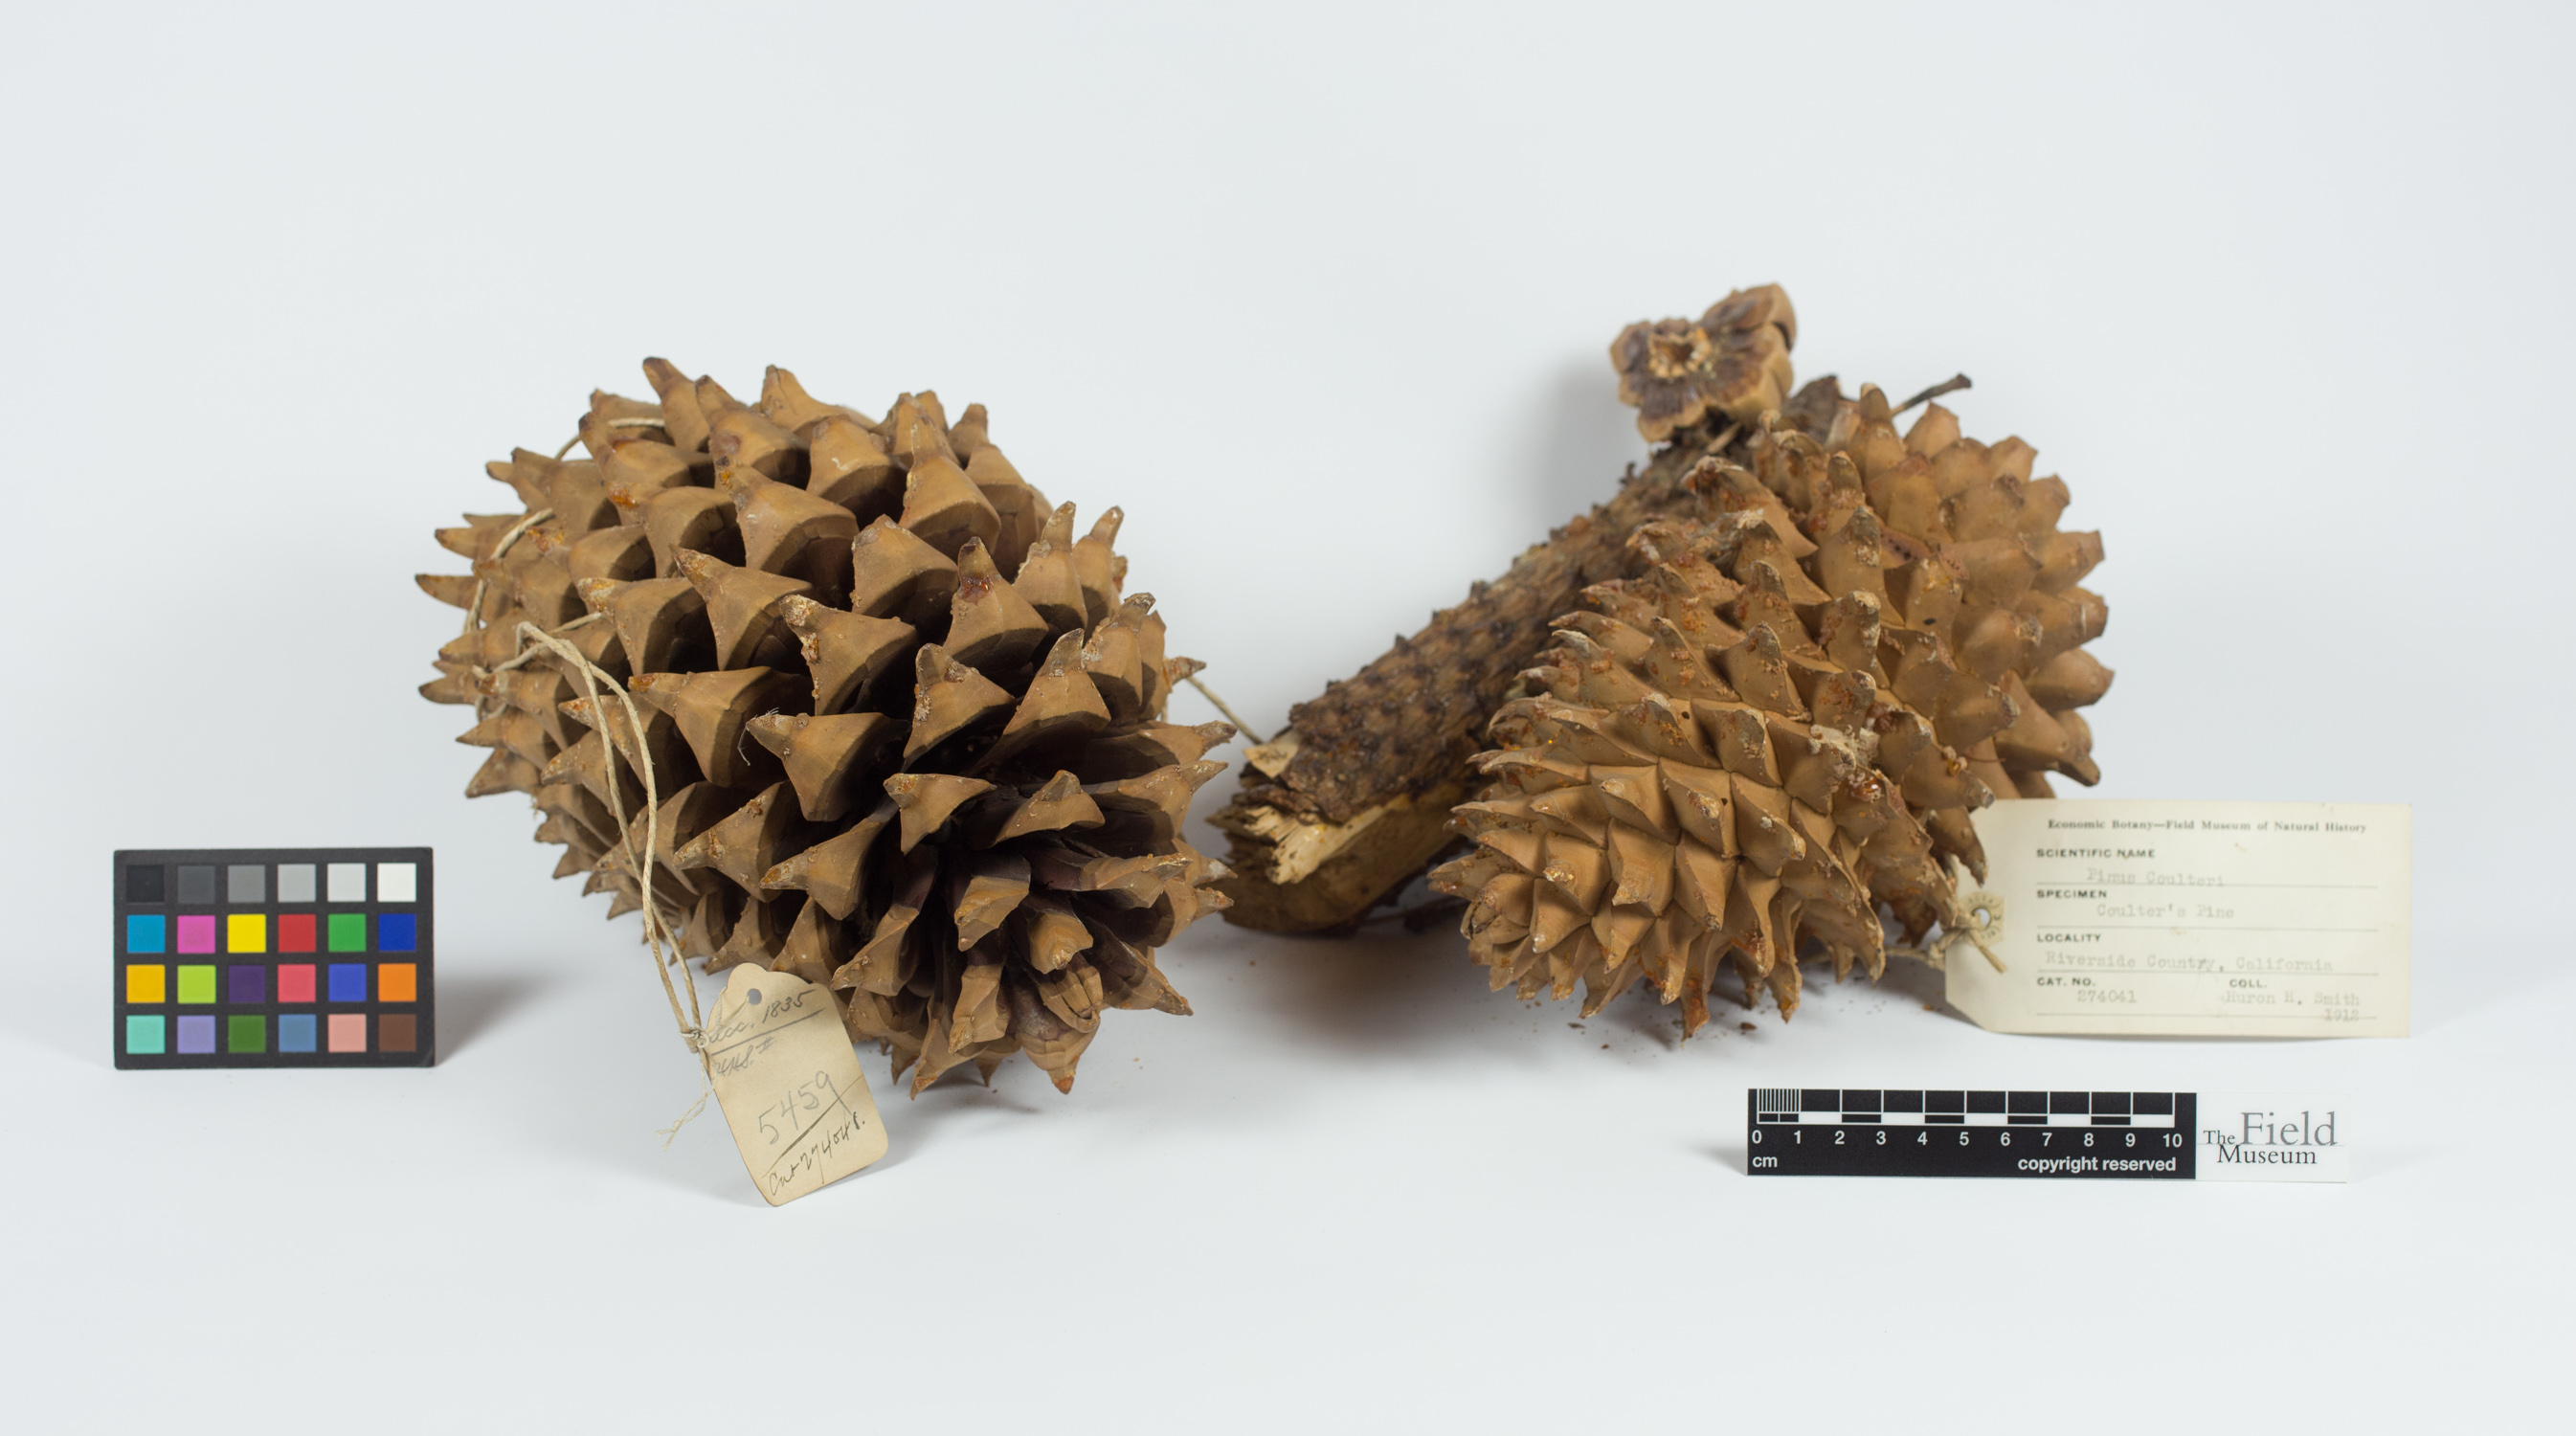 Pinus coulteri image